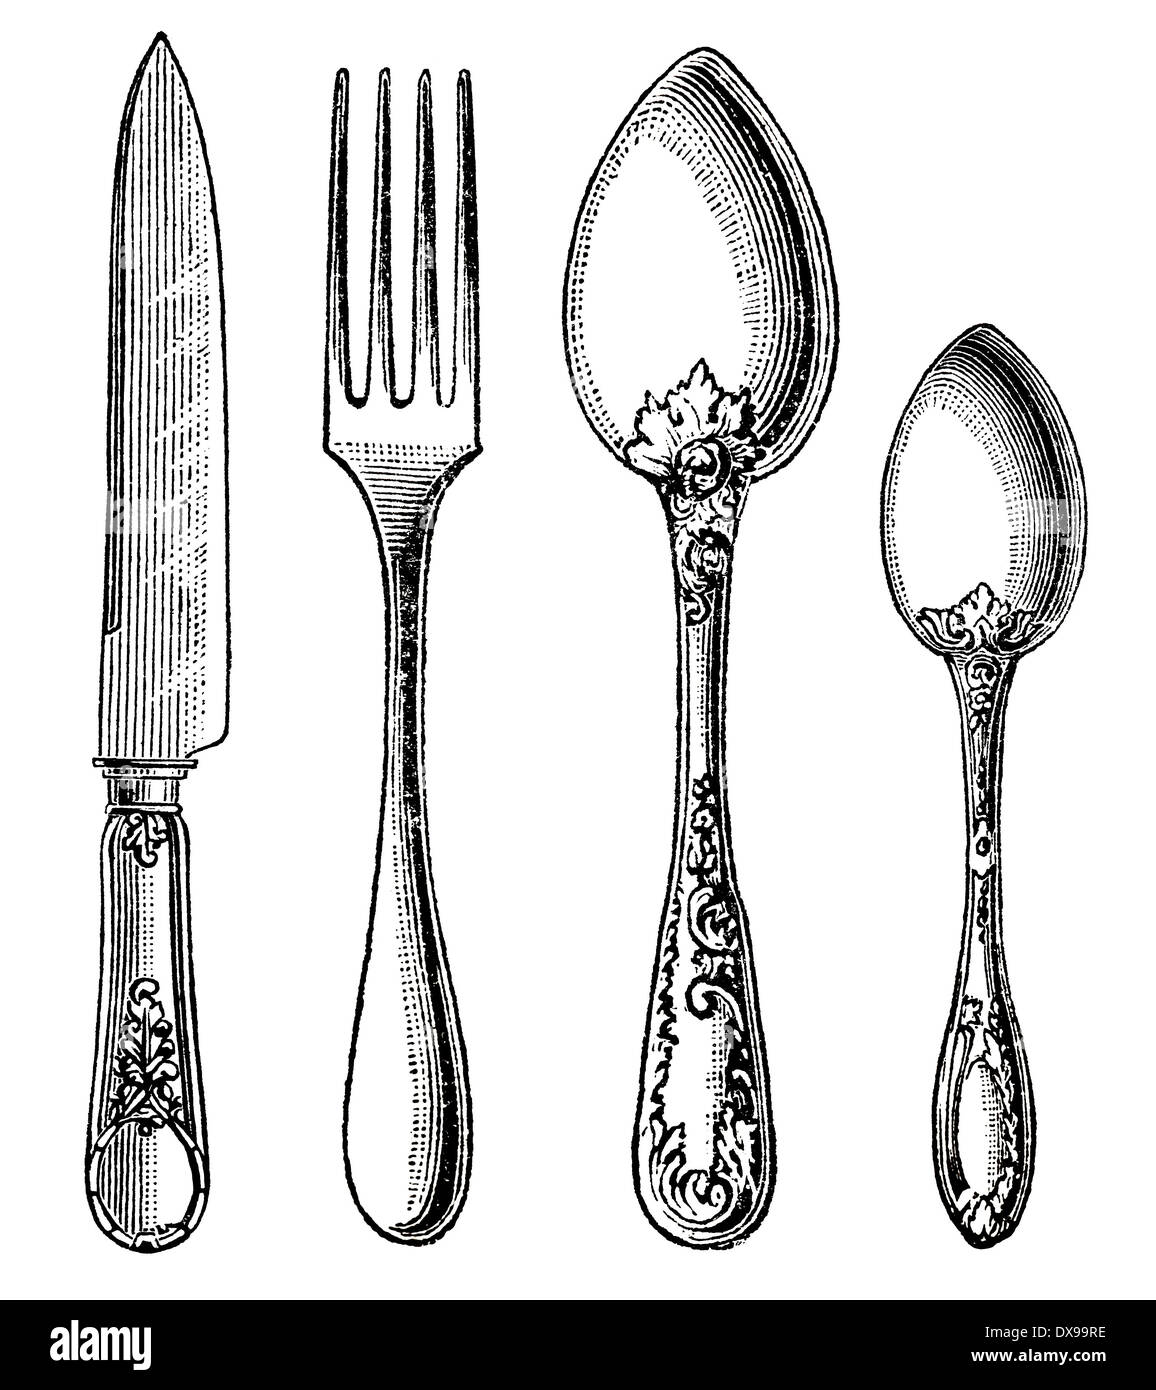 Vintage de l'argenterie. Couteau, fourchette et cuillère. gravure sur fond blanc Banque D'Images